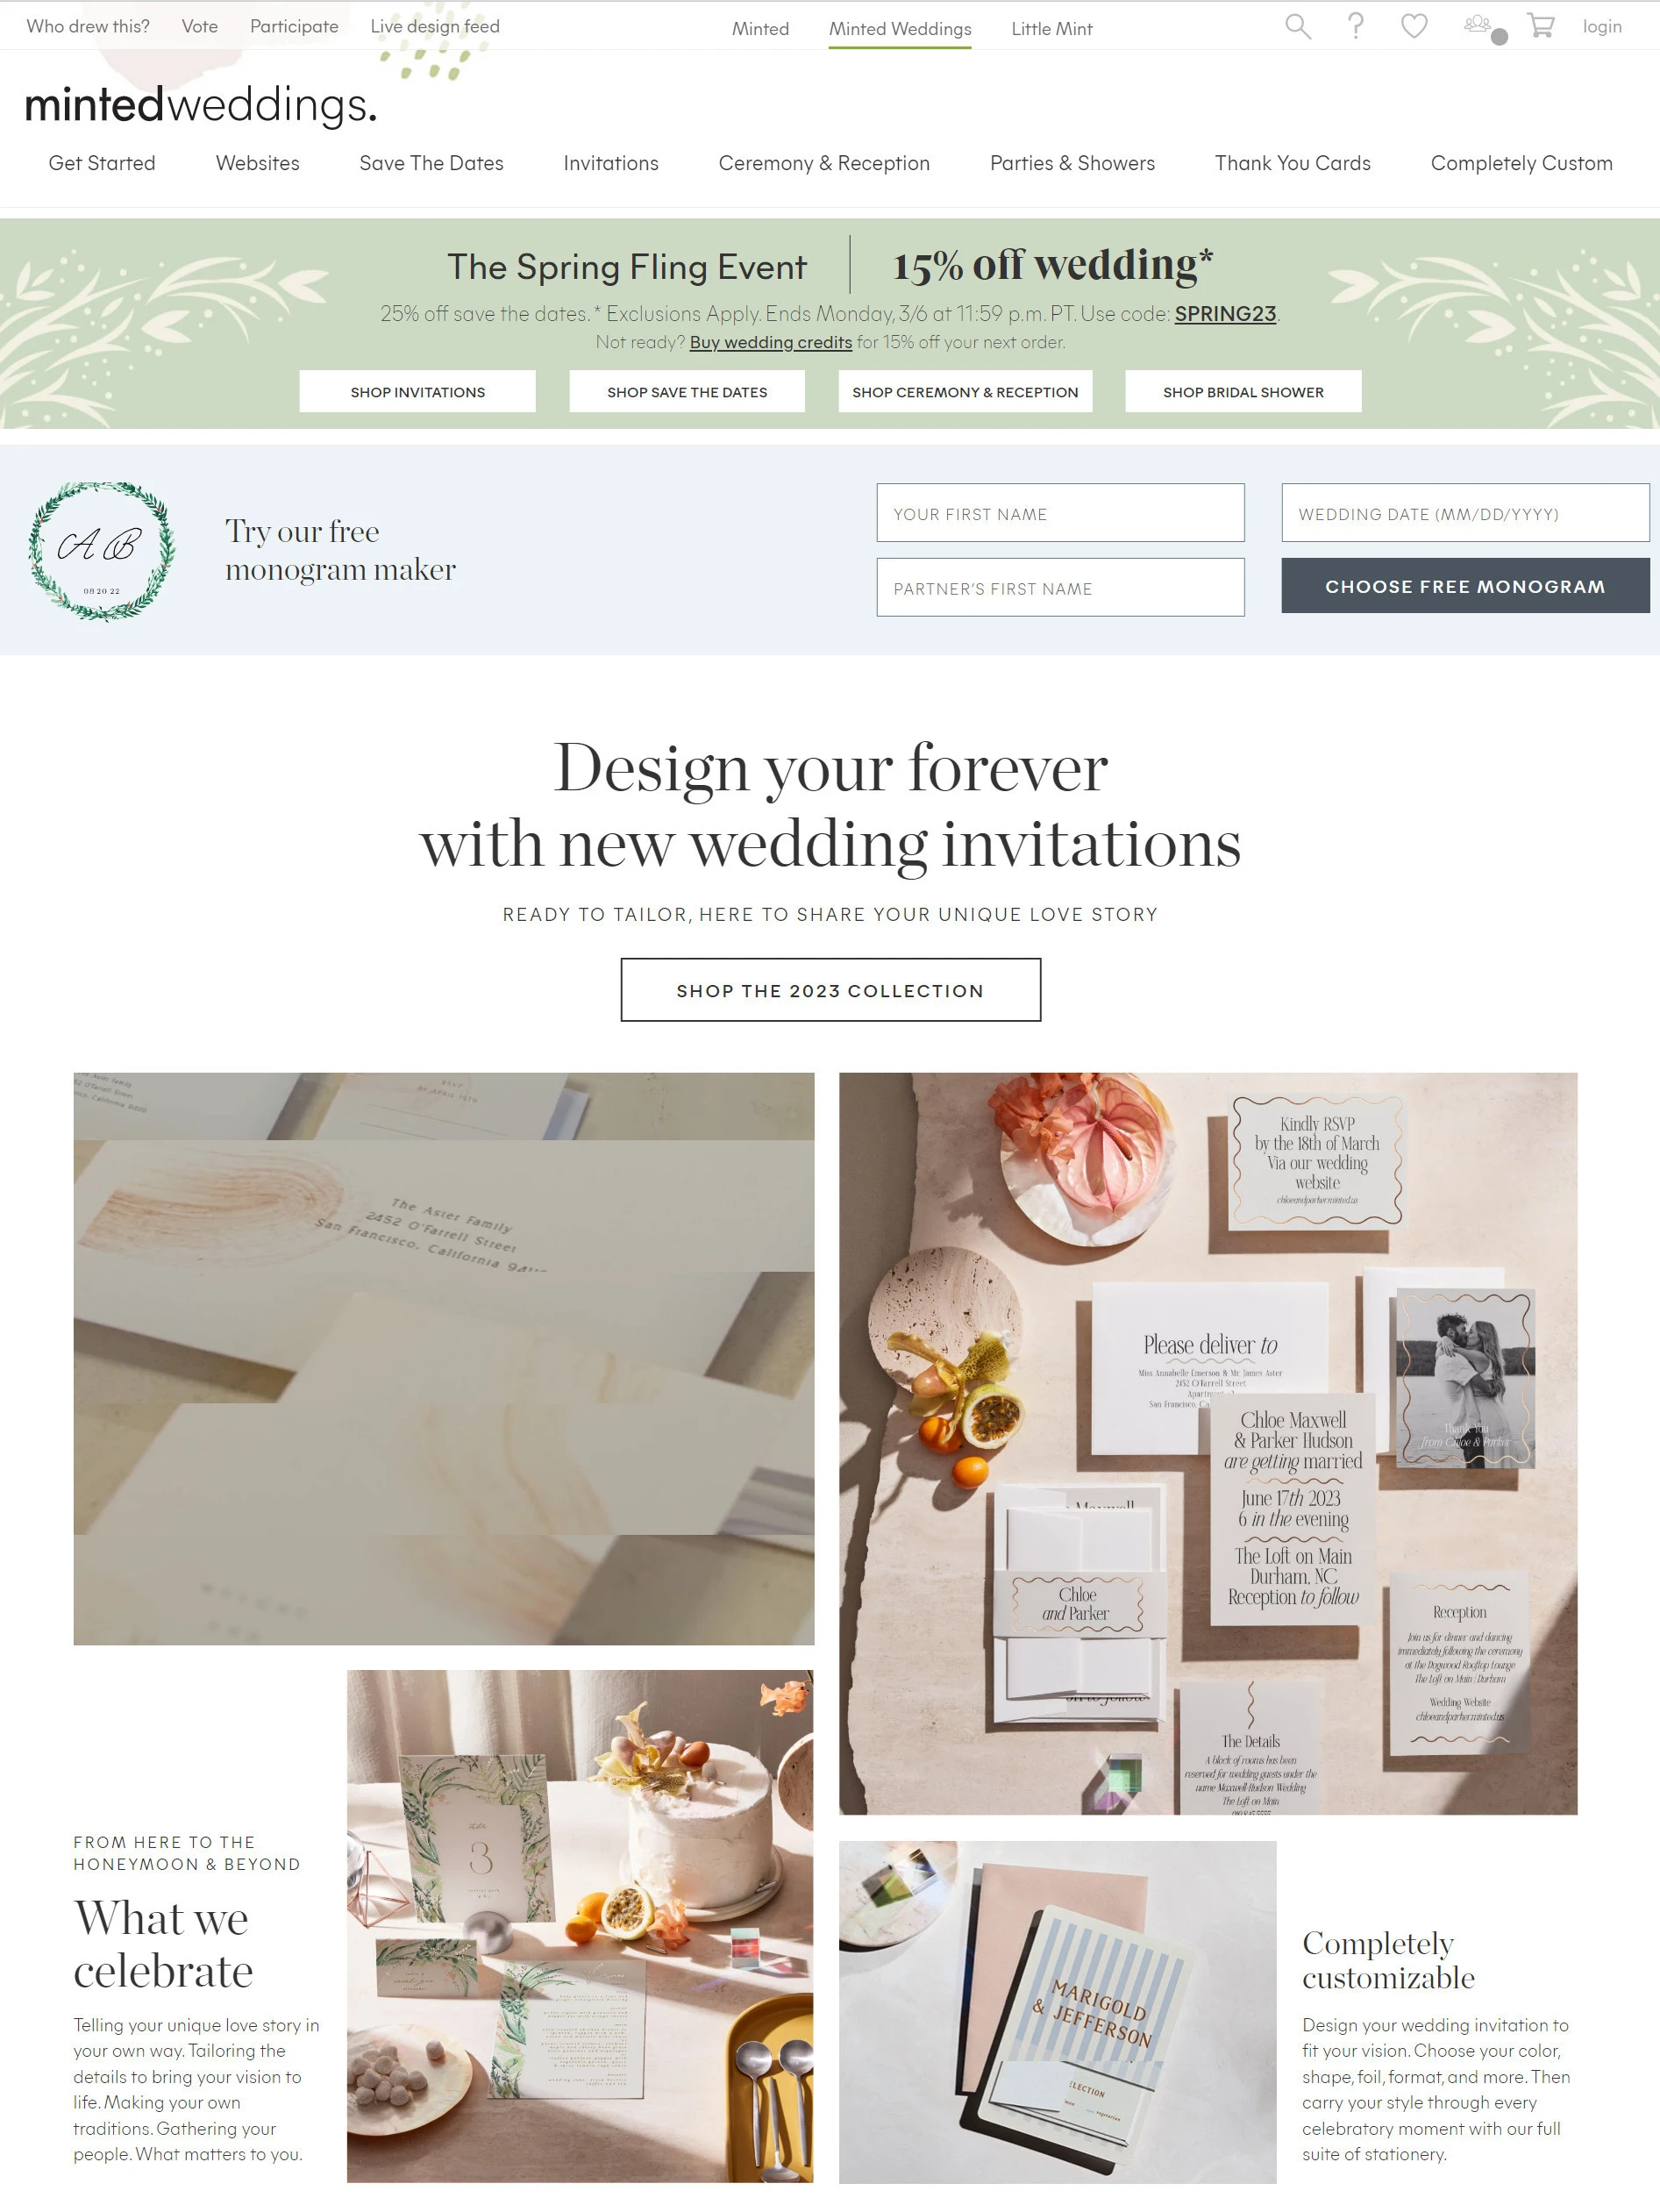 Minted wedding website builder homepage